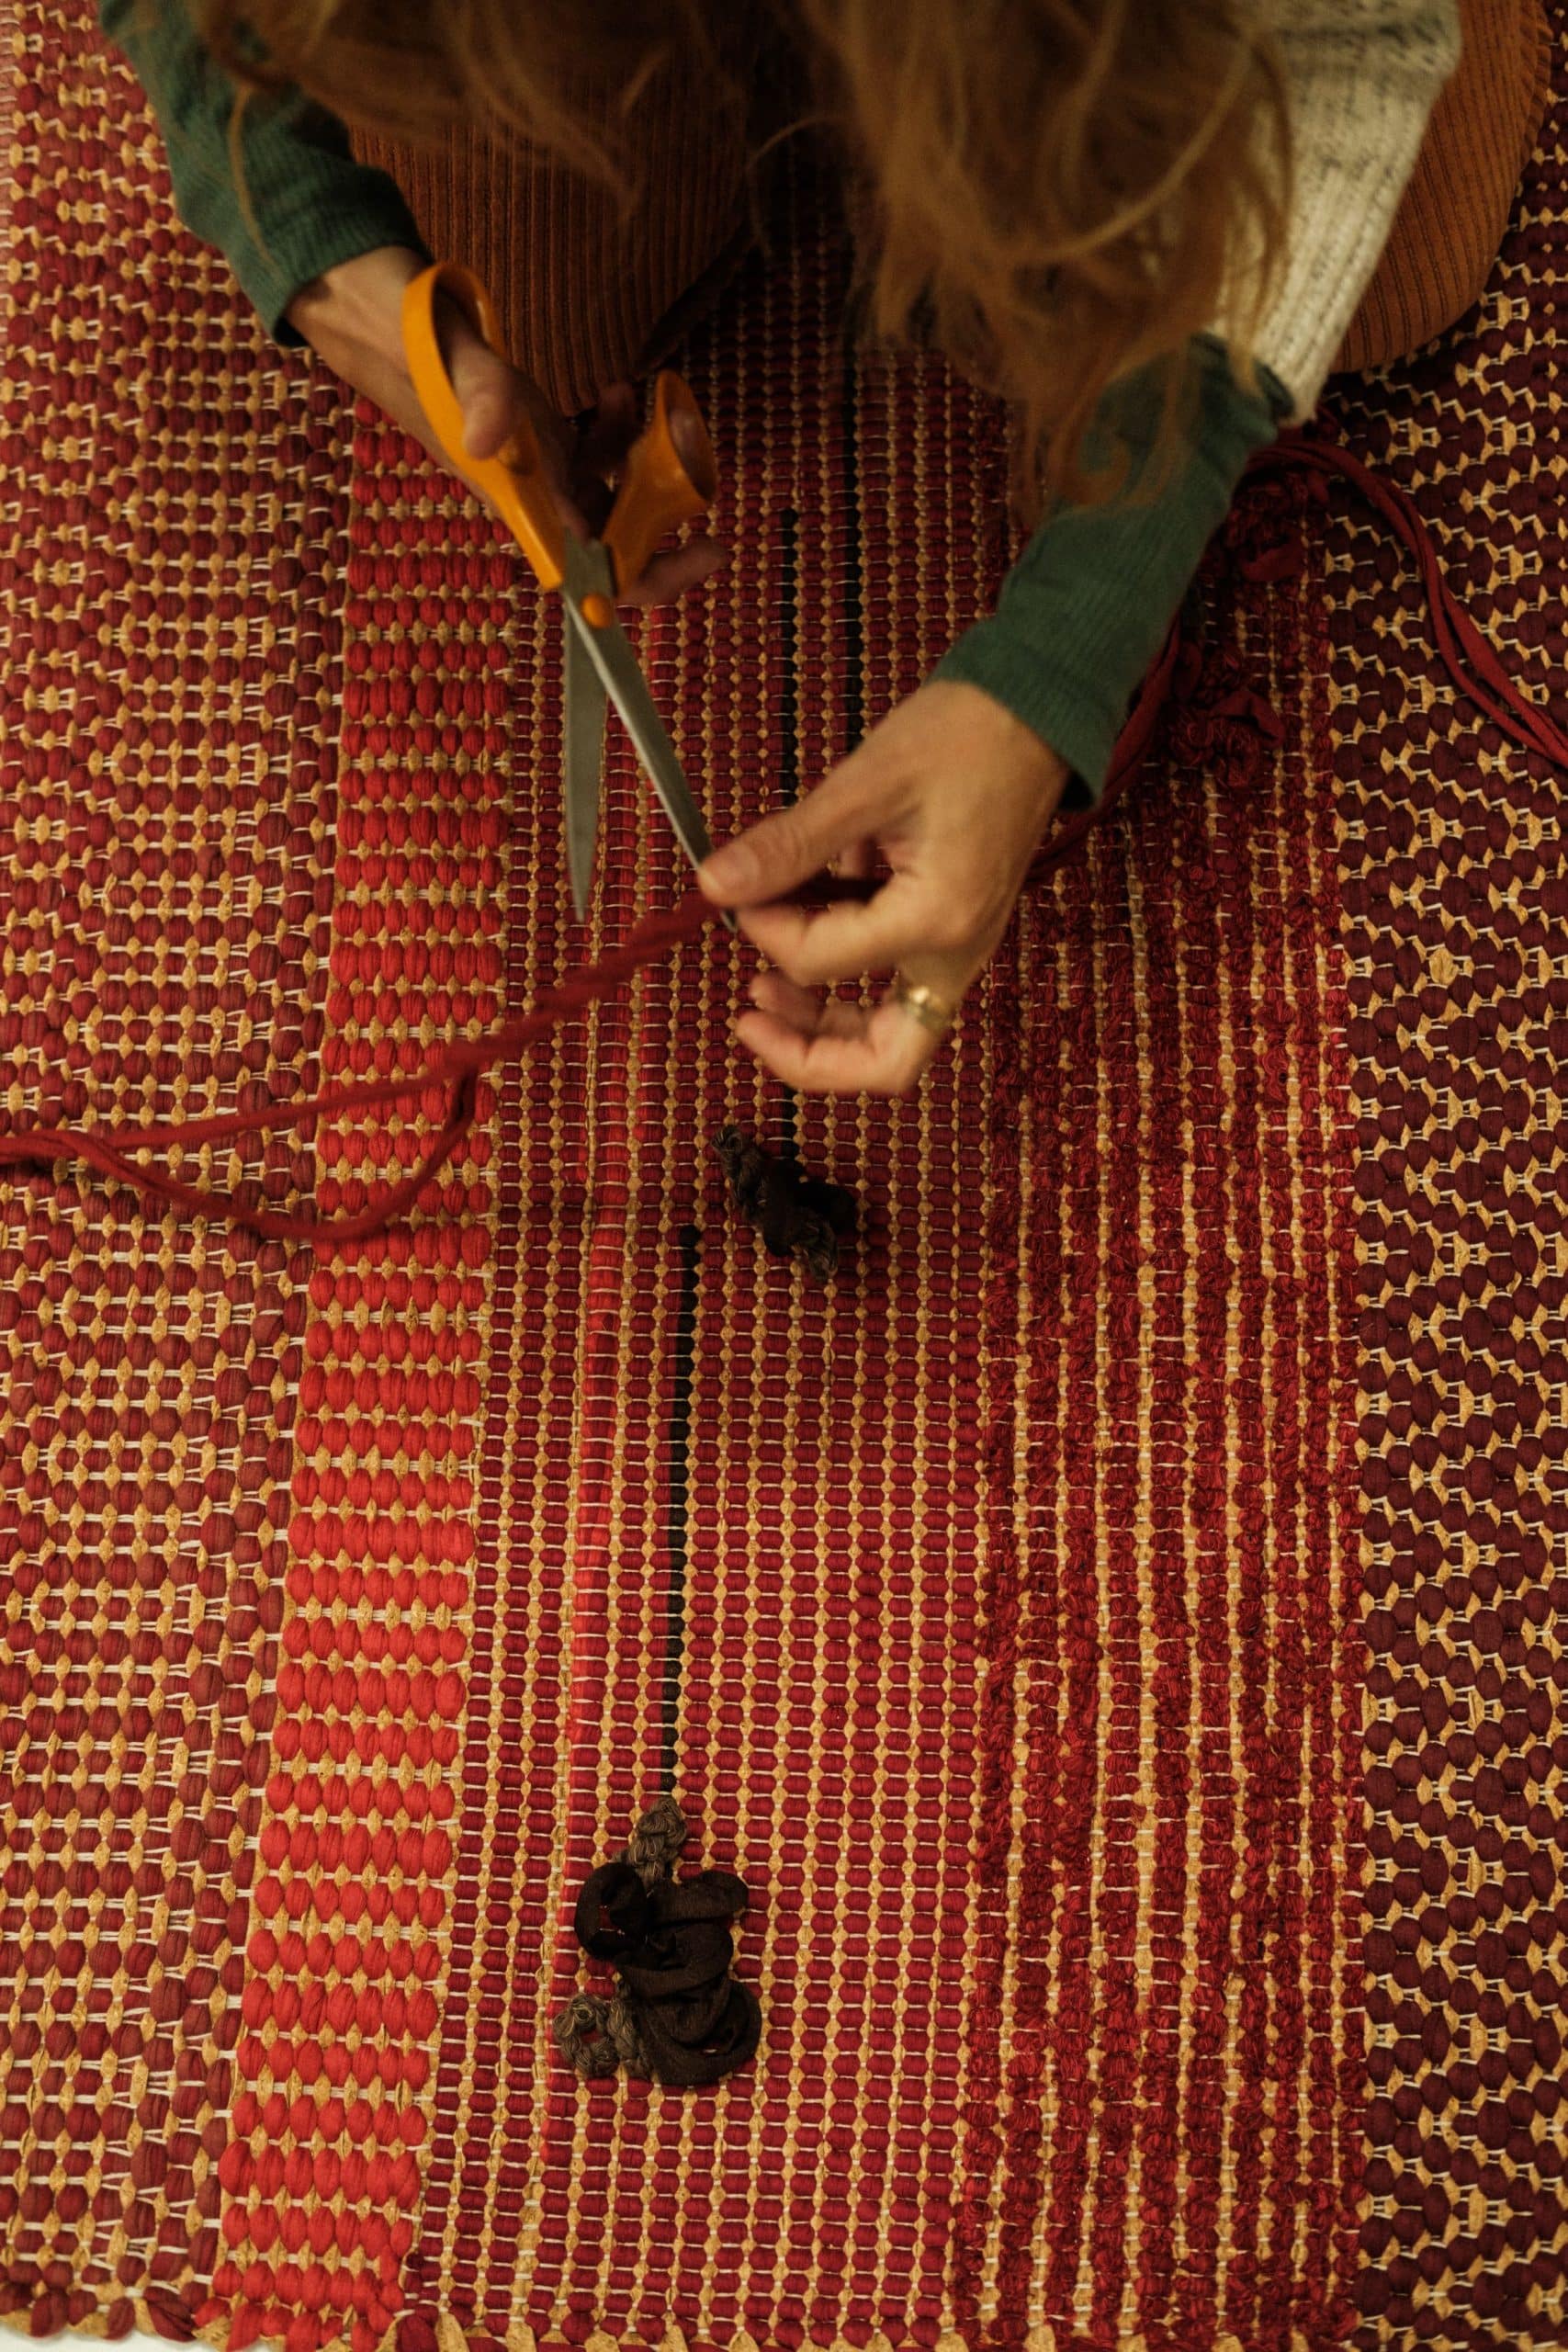 Sentada no chão, Susana trabalha sobre um tapete, cortando um pedaço de linha com a tesoura.